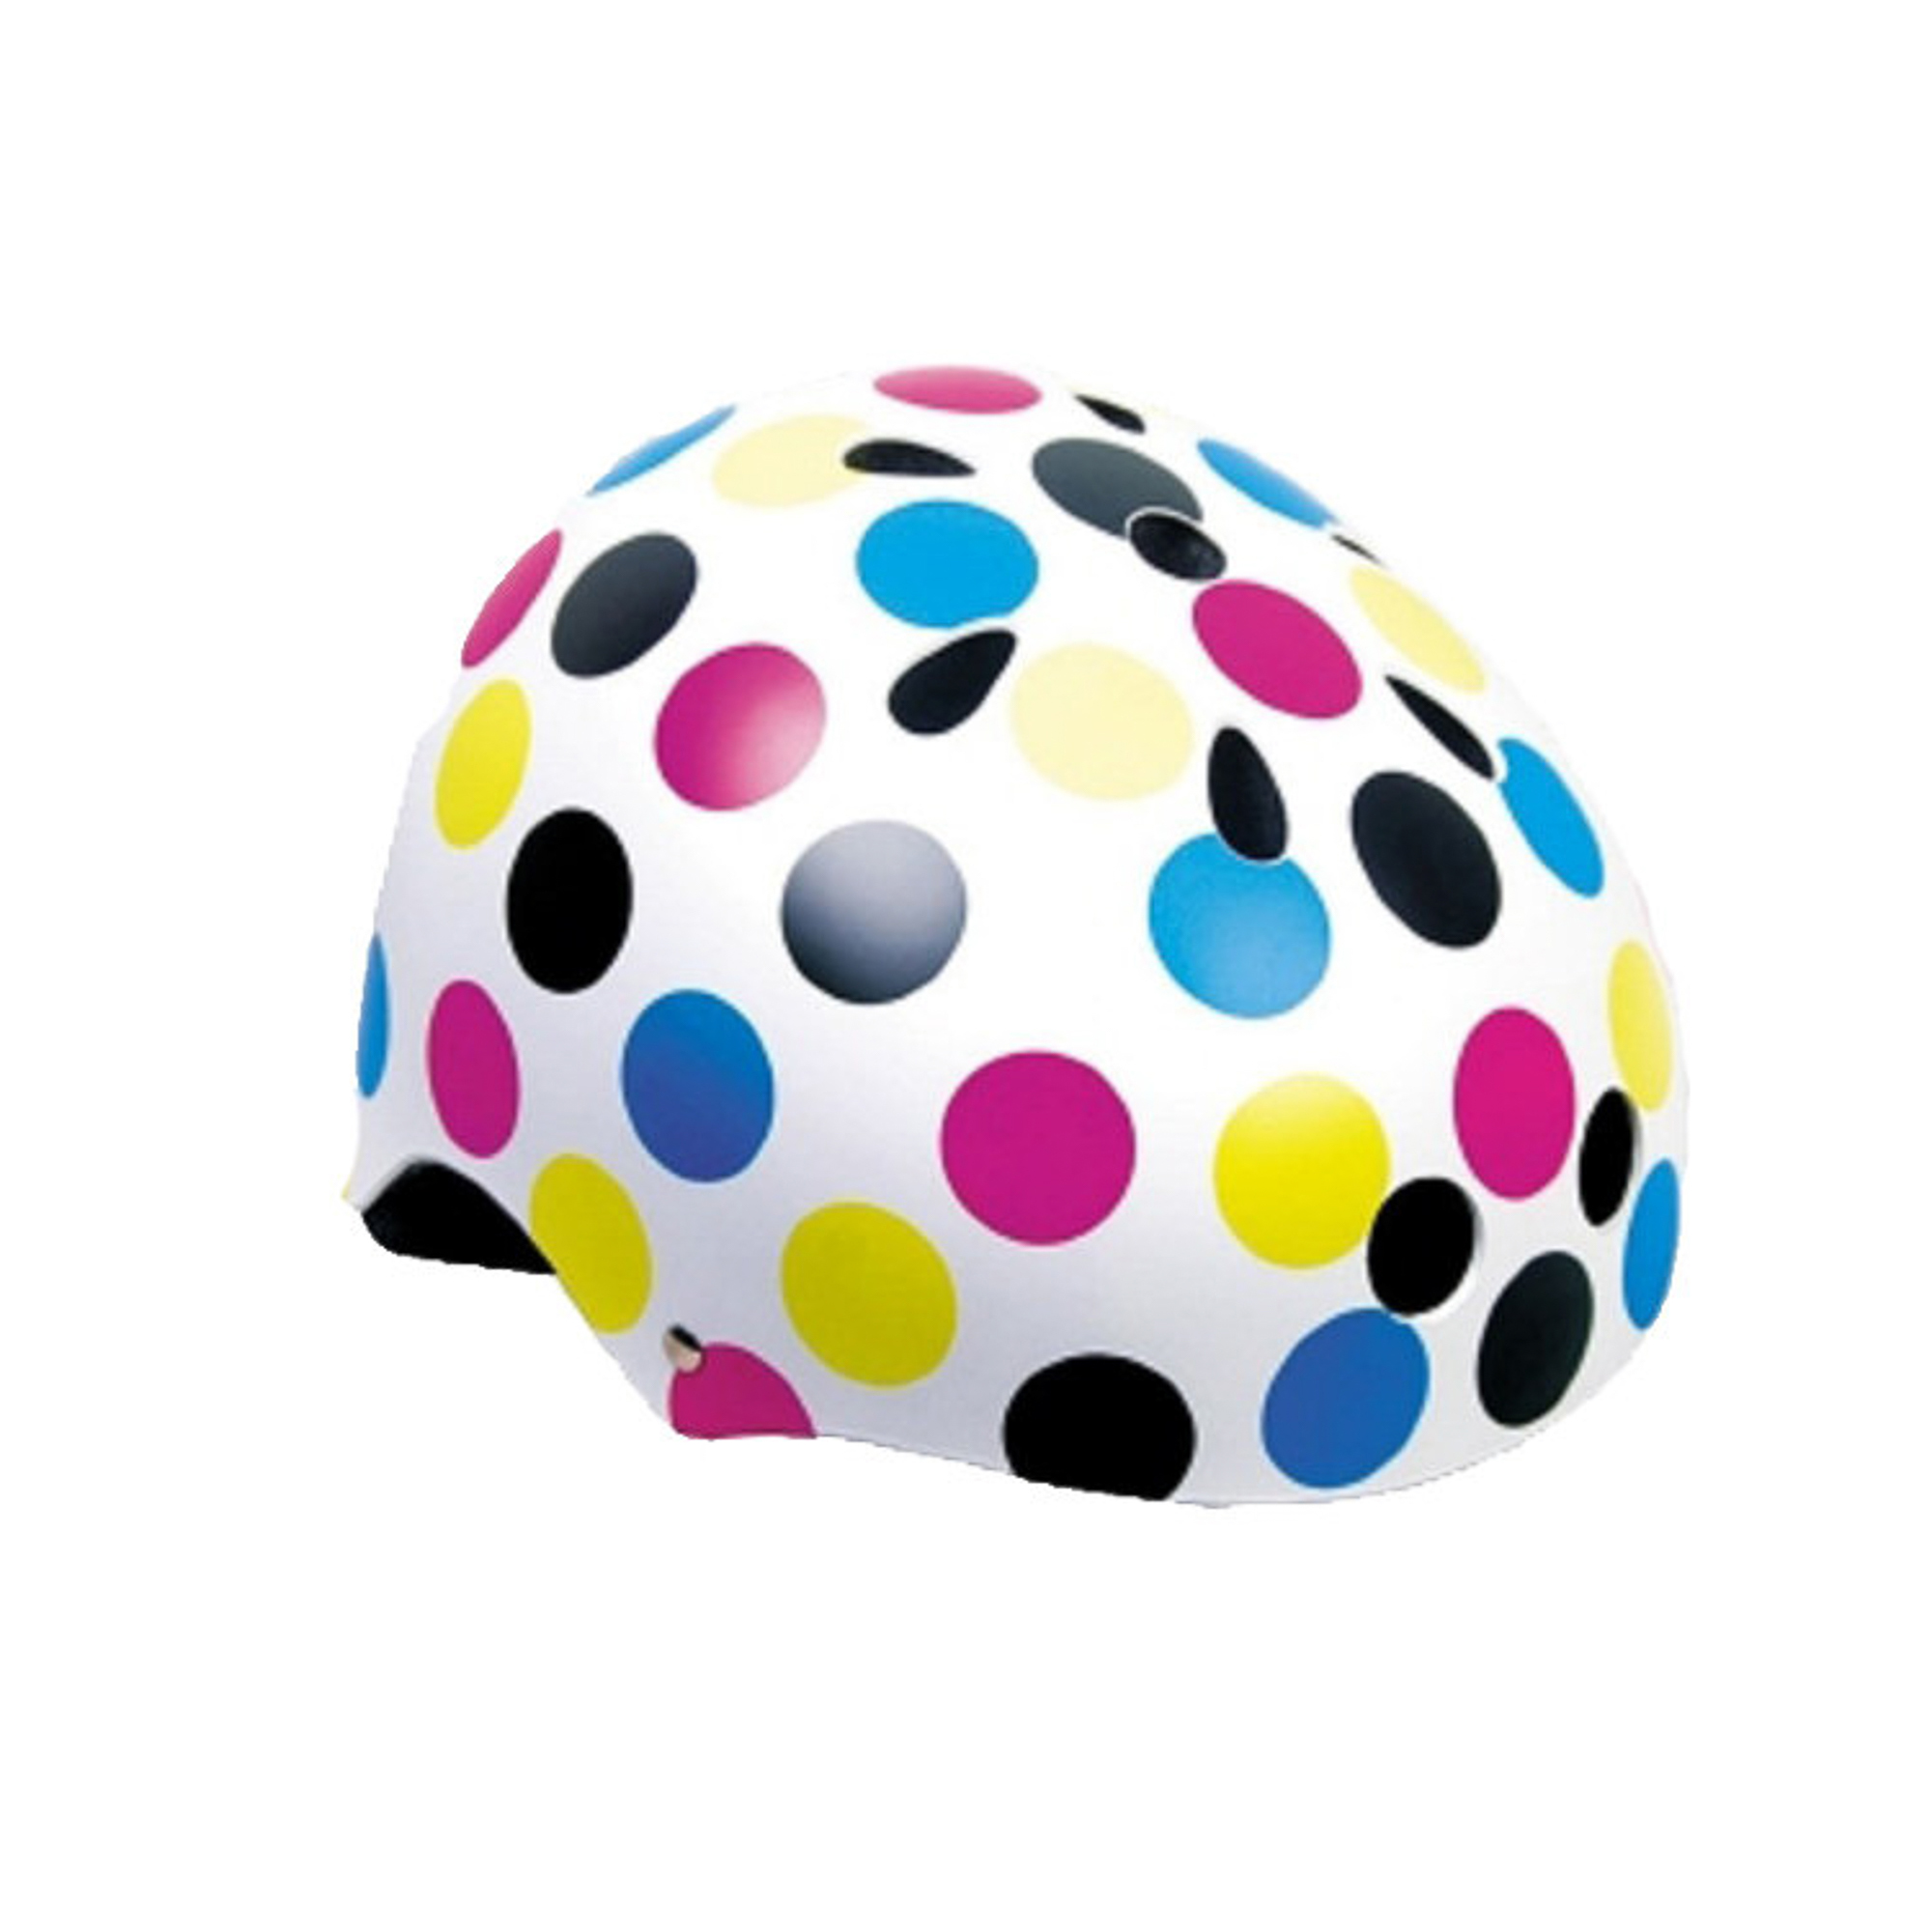 Шлем роллерский р. М (6-10 лет) Maxcity Graffity Dots, цвет белый, разноцветные пятна, размер М